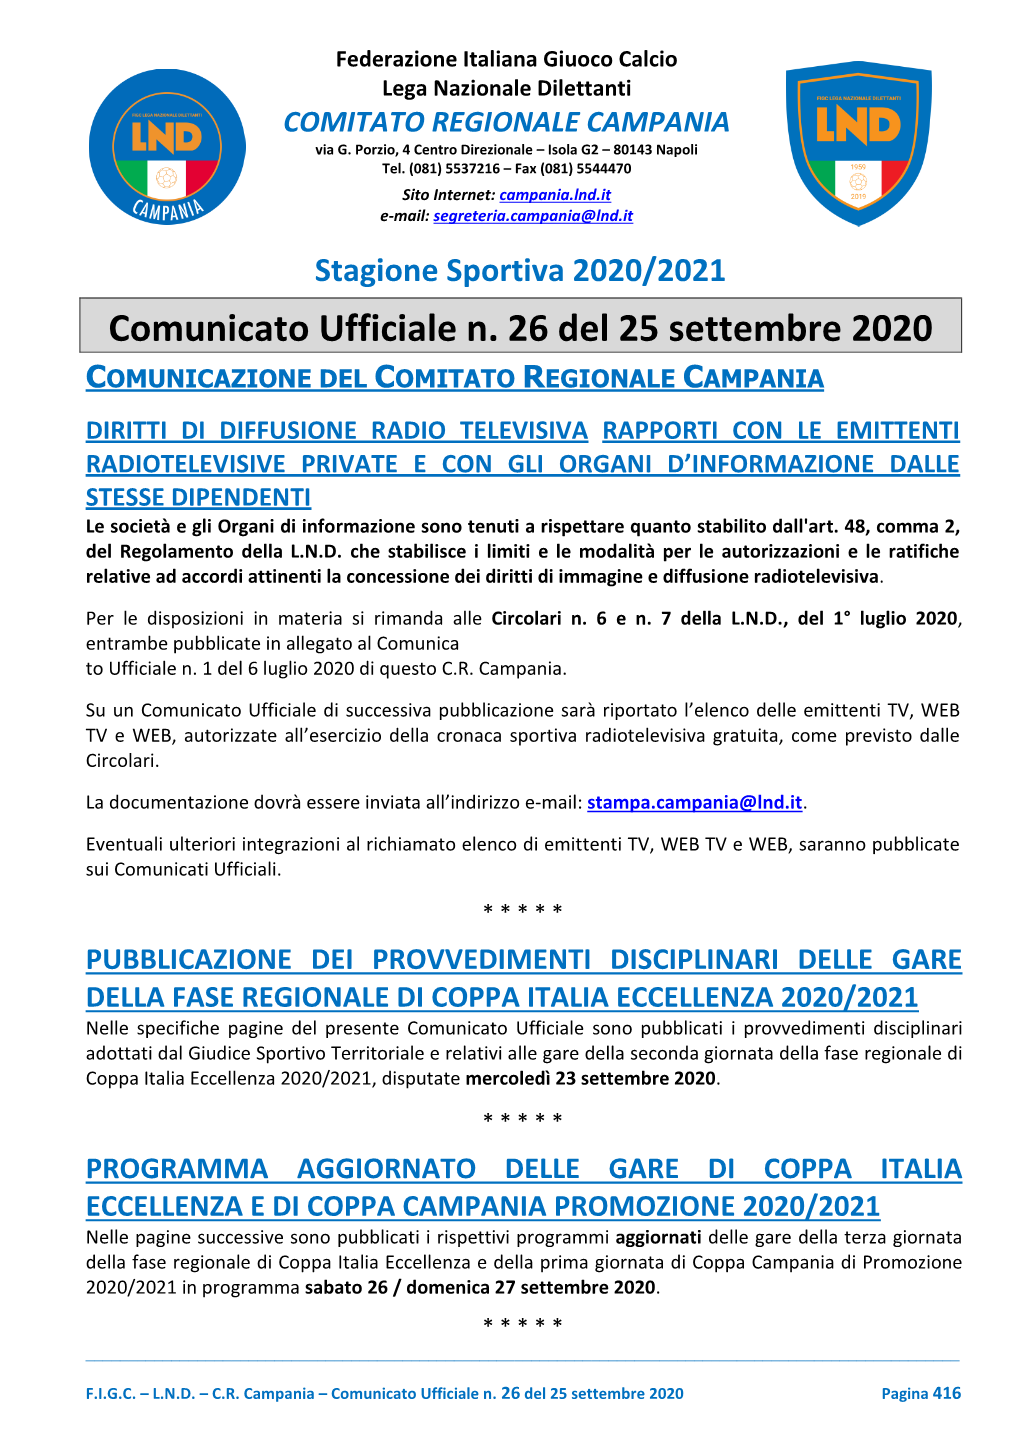 Comunicato Ufficiale N. 26 Del 25 Settembre 2020